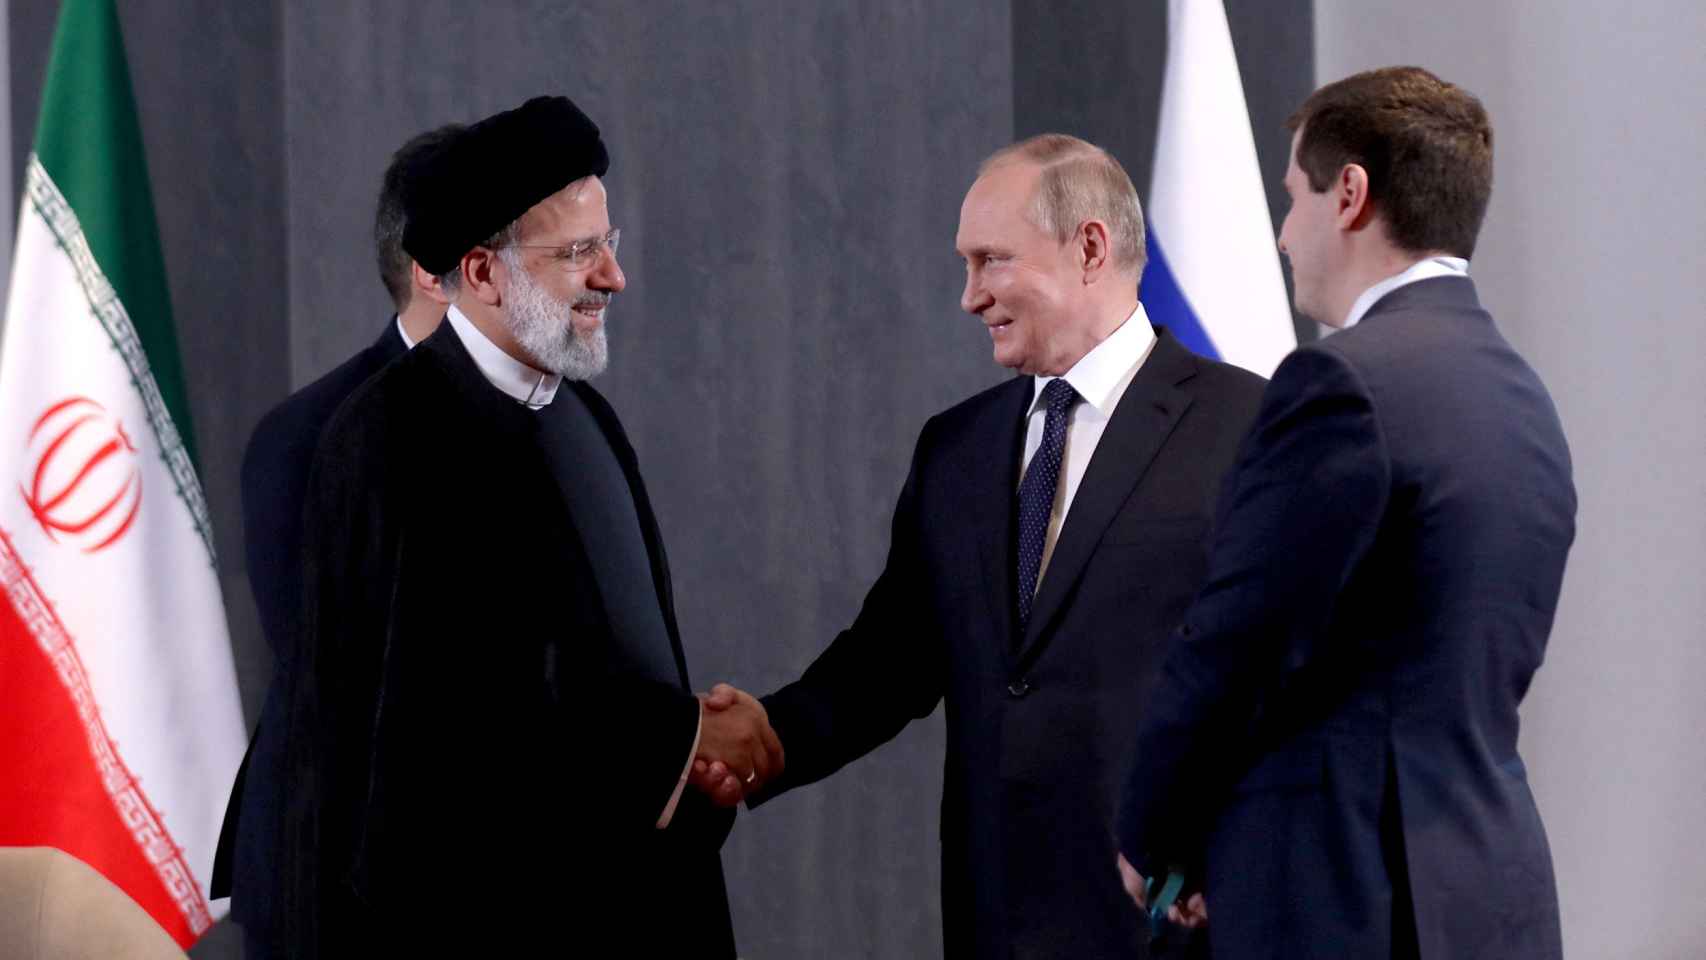 presidente ruso, Vladimir Putin, le da la mano al presidente iraní, Ebrahim Raisi.